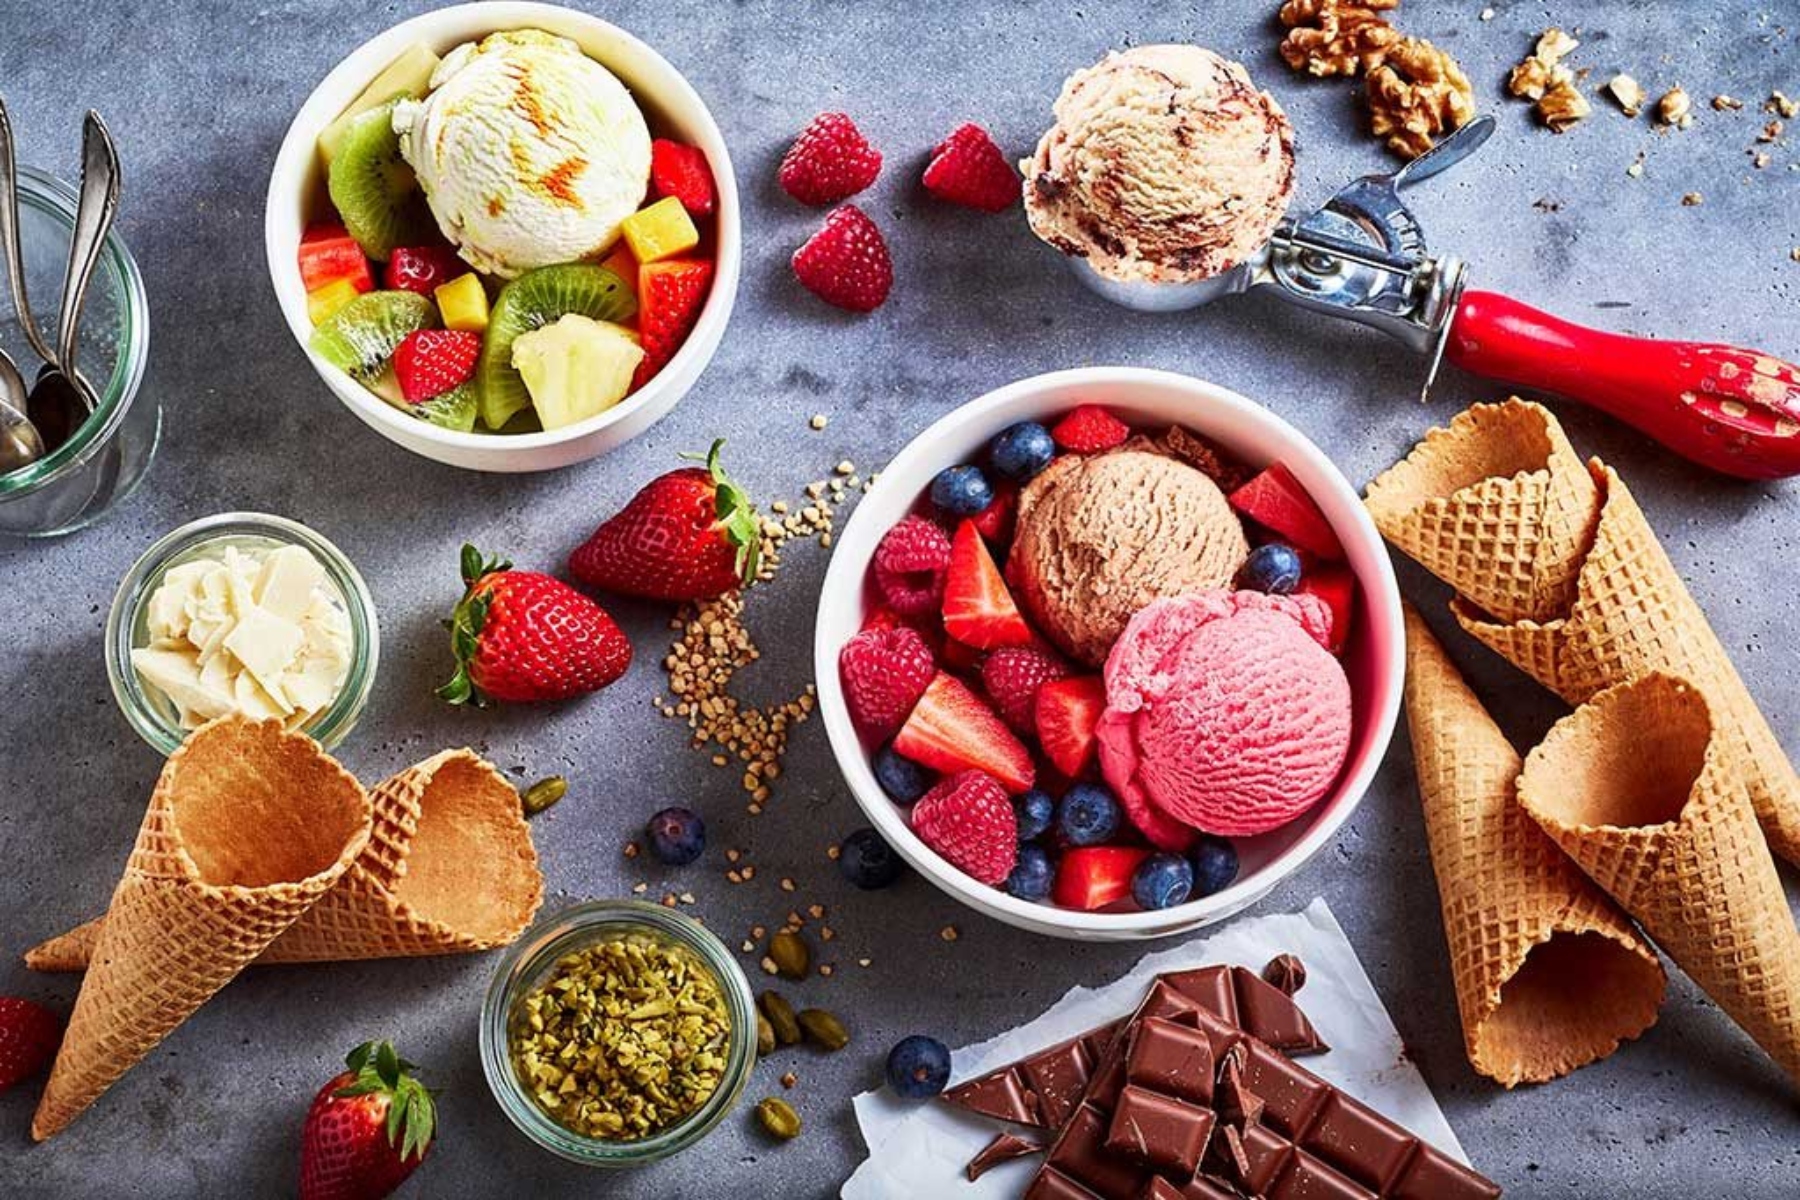 Παγωτό: Το παγωτό μπορεί να έχει εκπληκτικά οφέλη για την υγεία